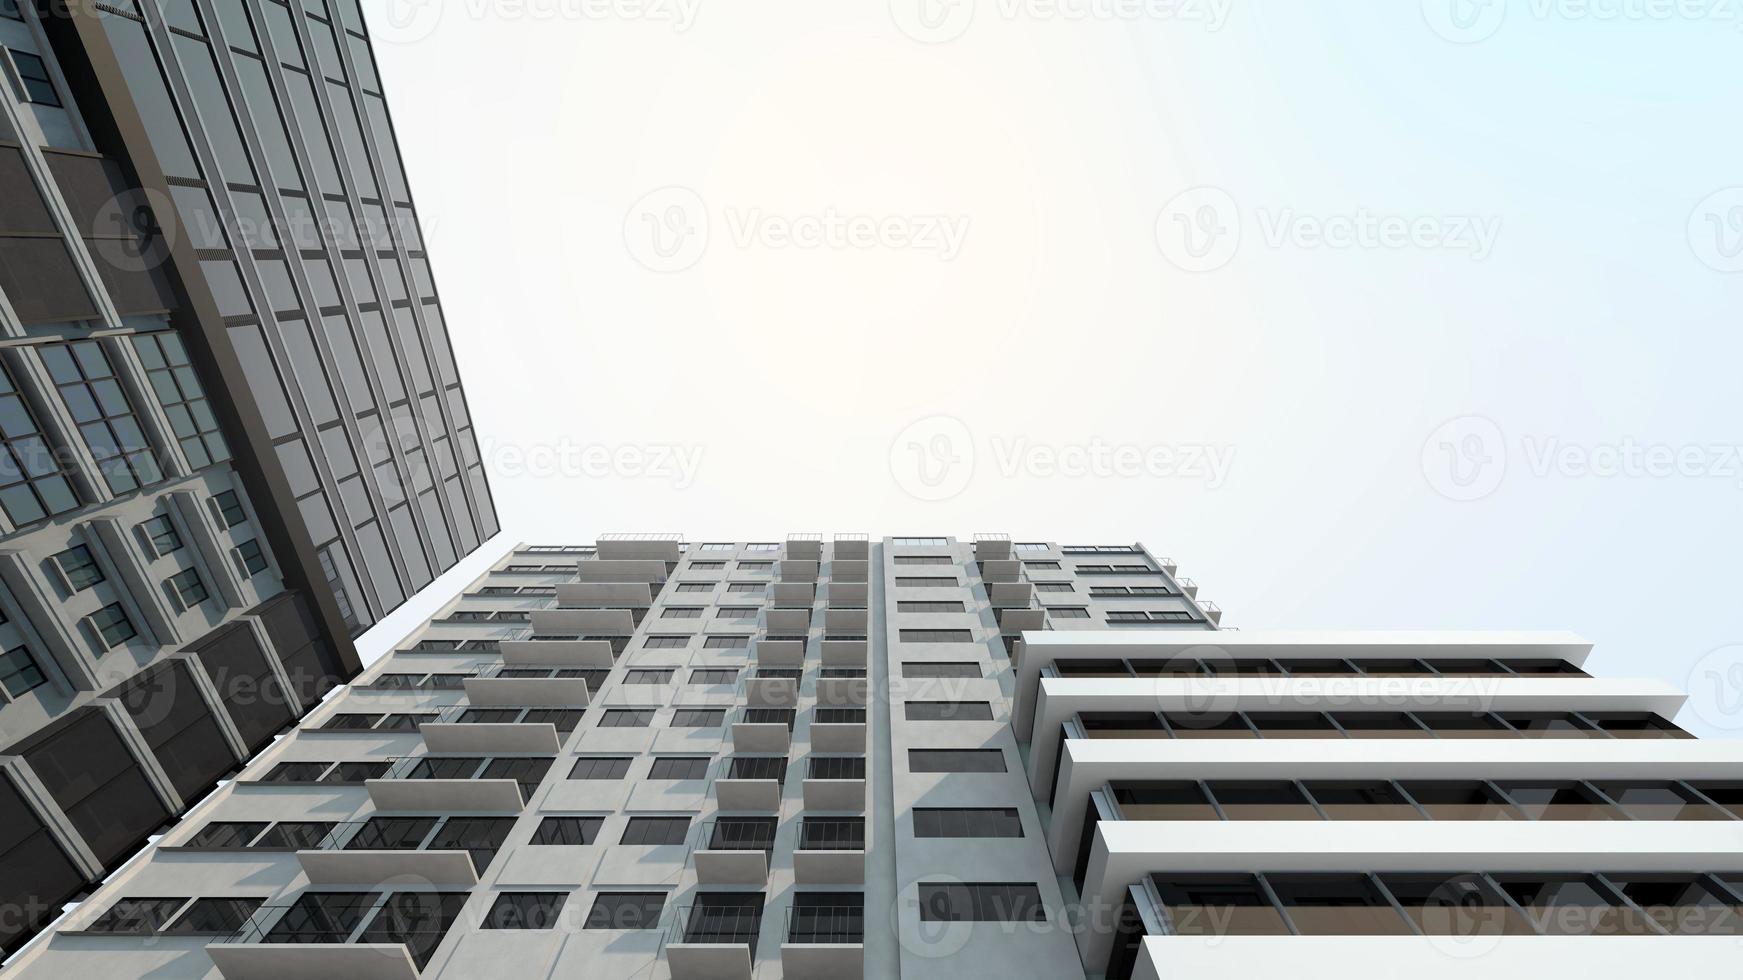 edifício moderno para investimento imobiliário e imobiliário foto